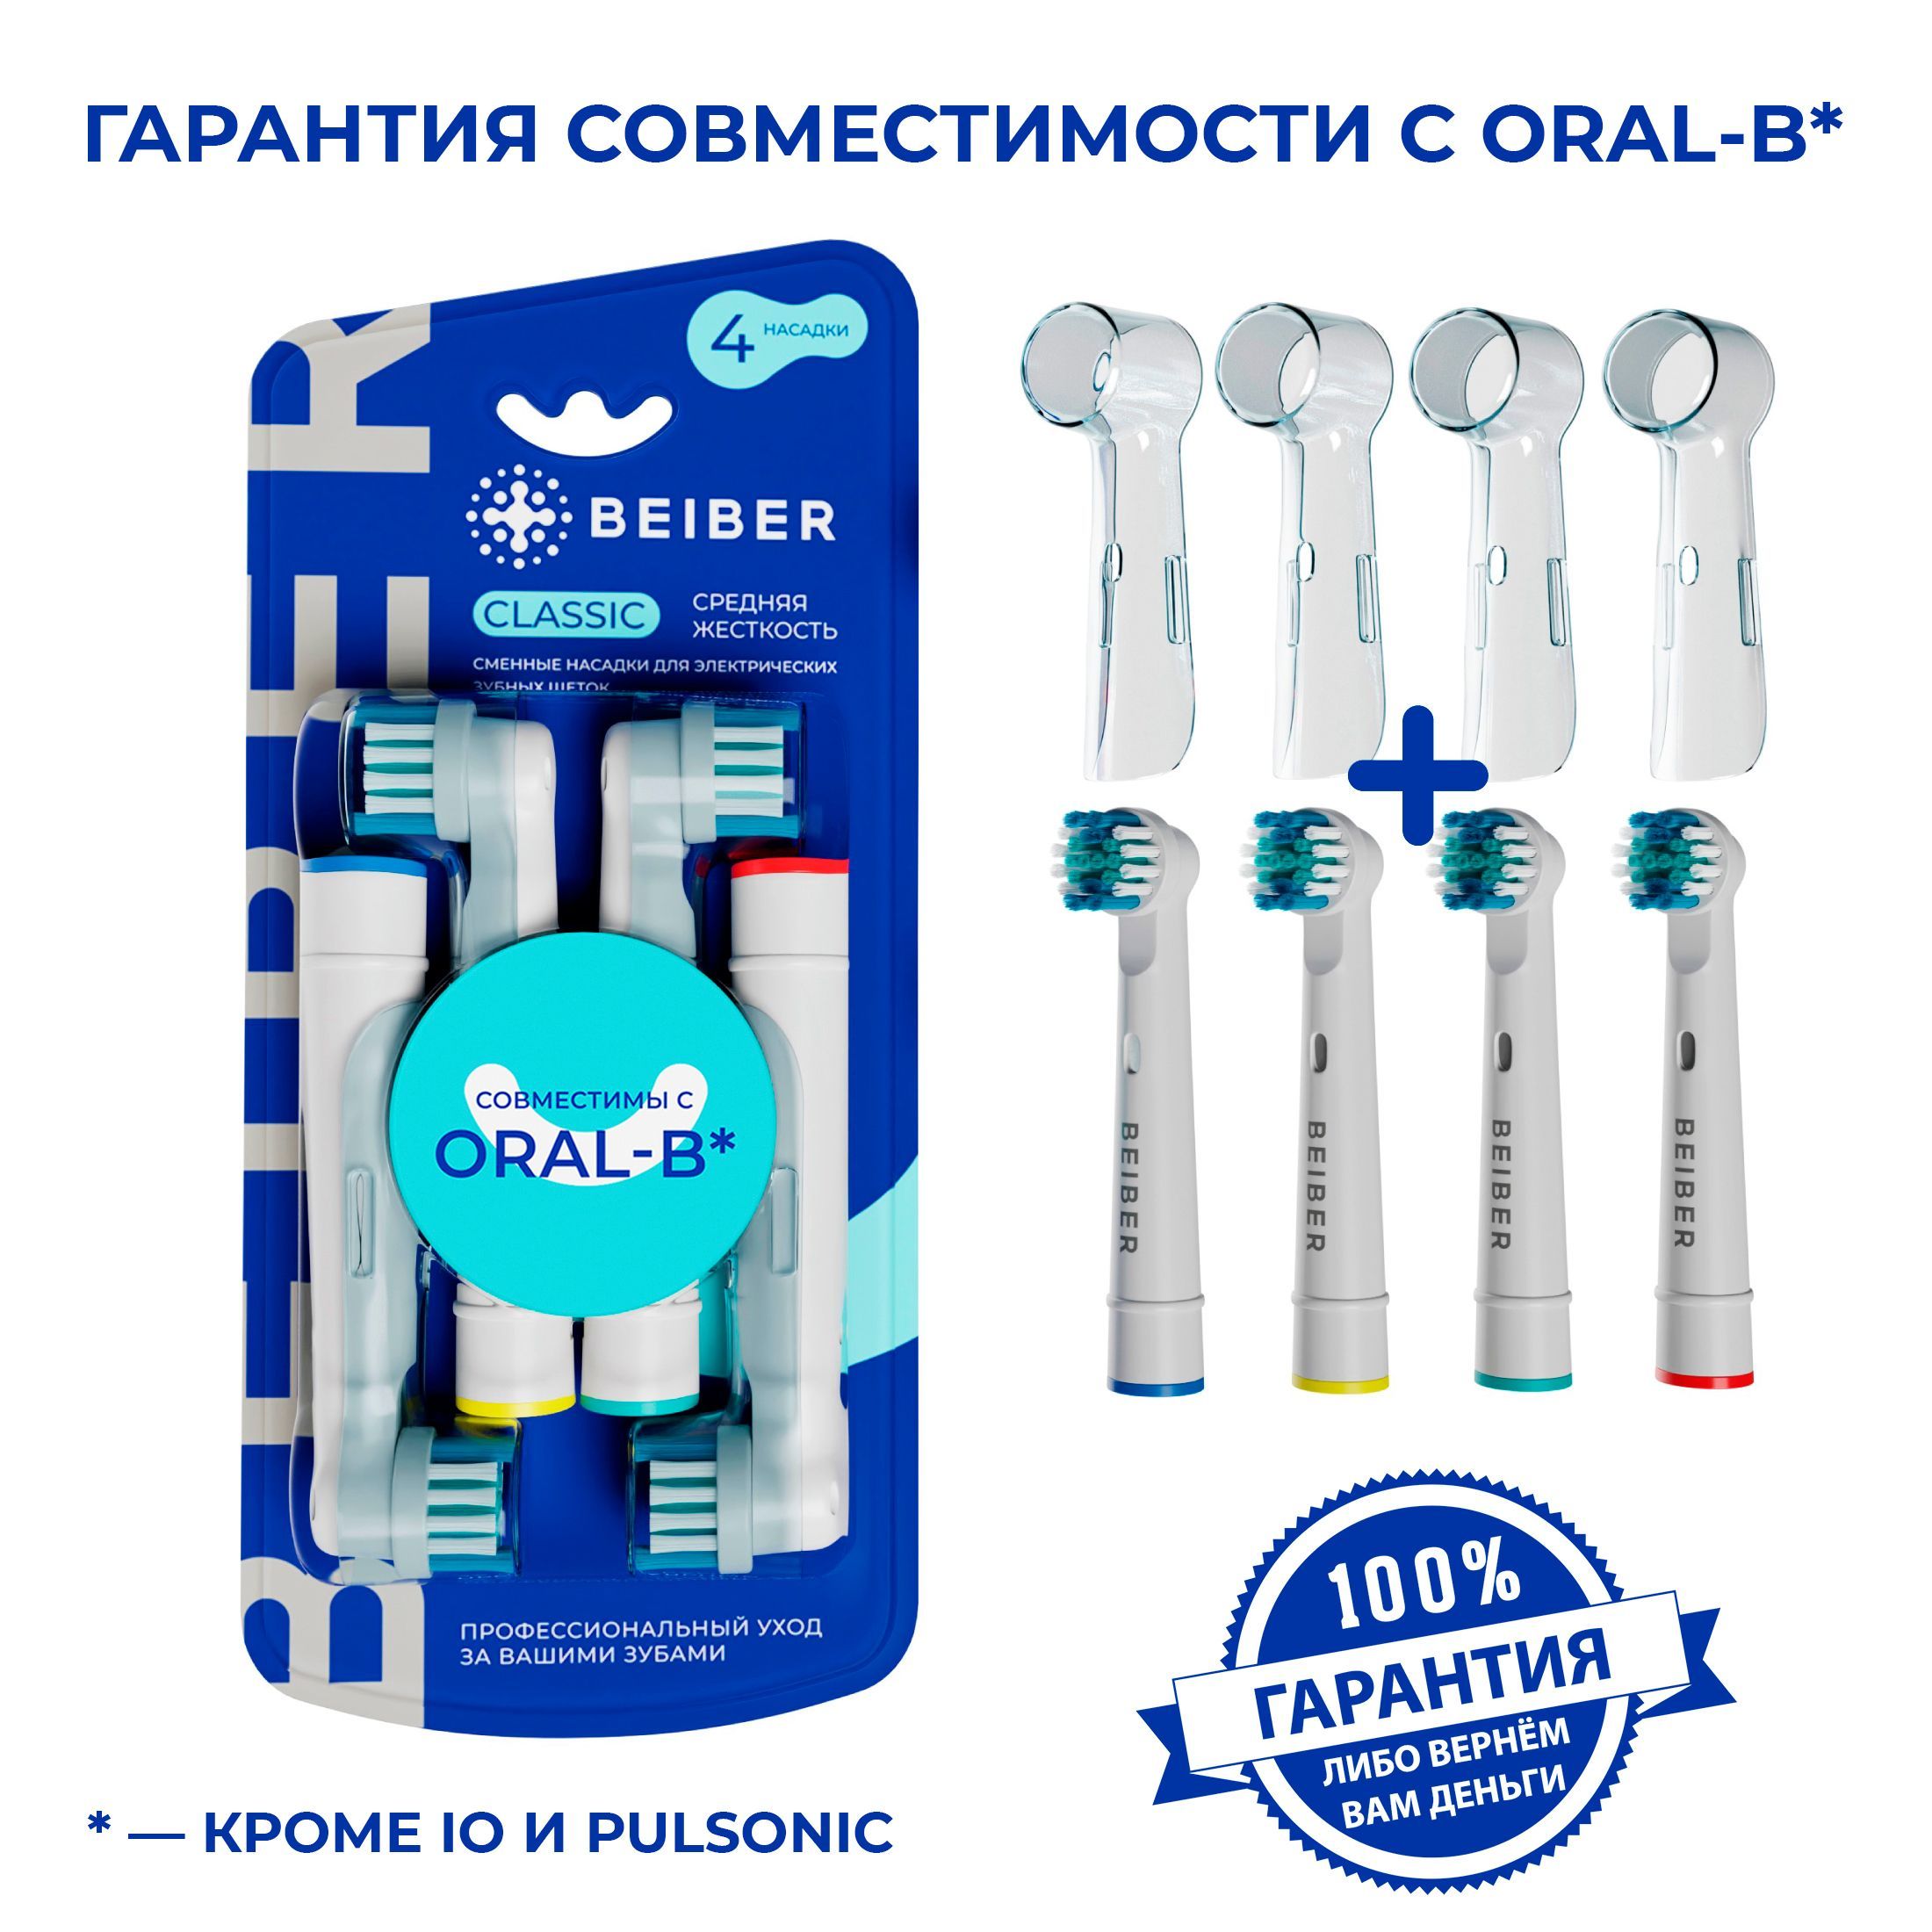 Совместимые с Oral-B насадки CLASSIC с КОЛПАЧКОМ для электрических зубных щеток Braun 4 шт.